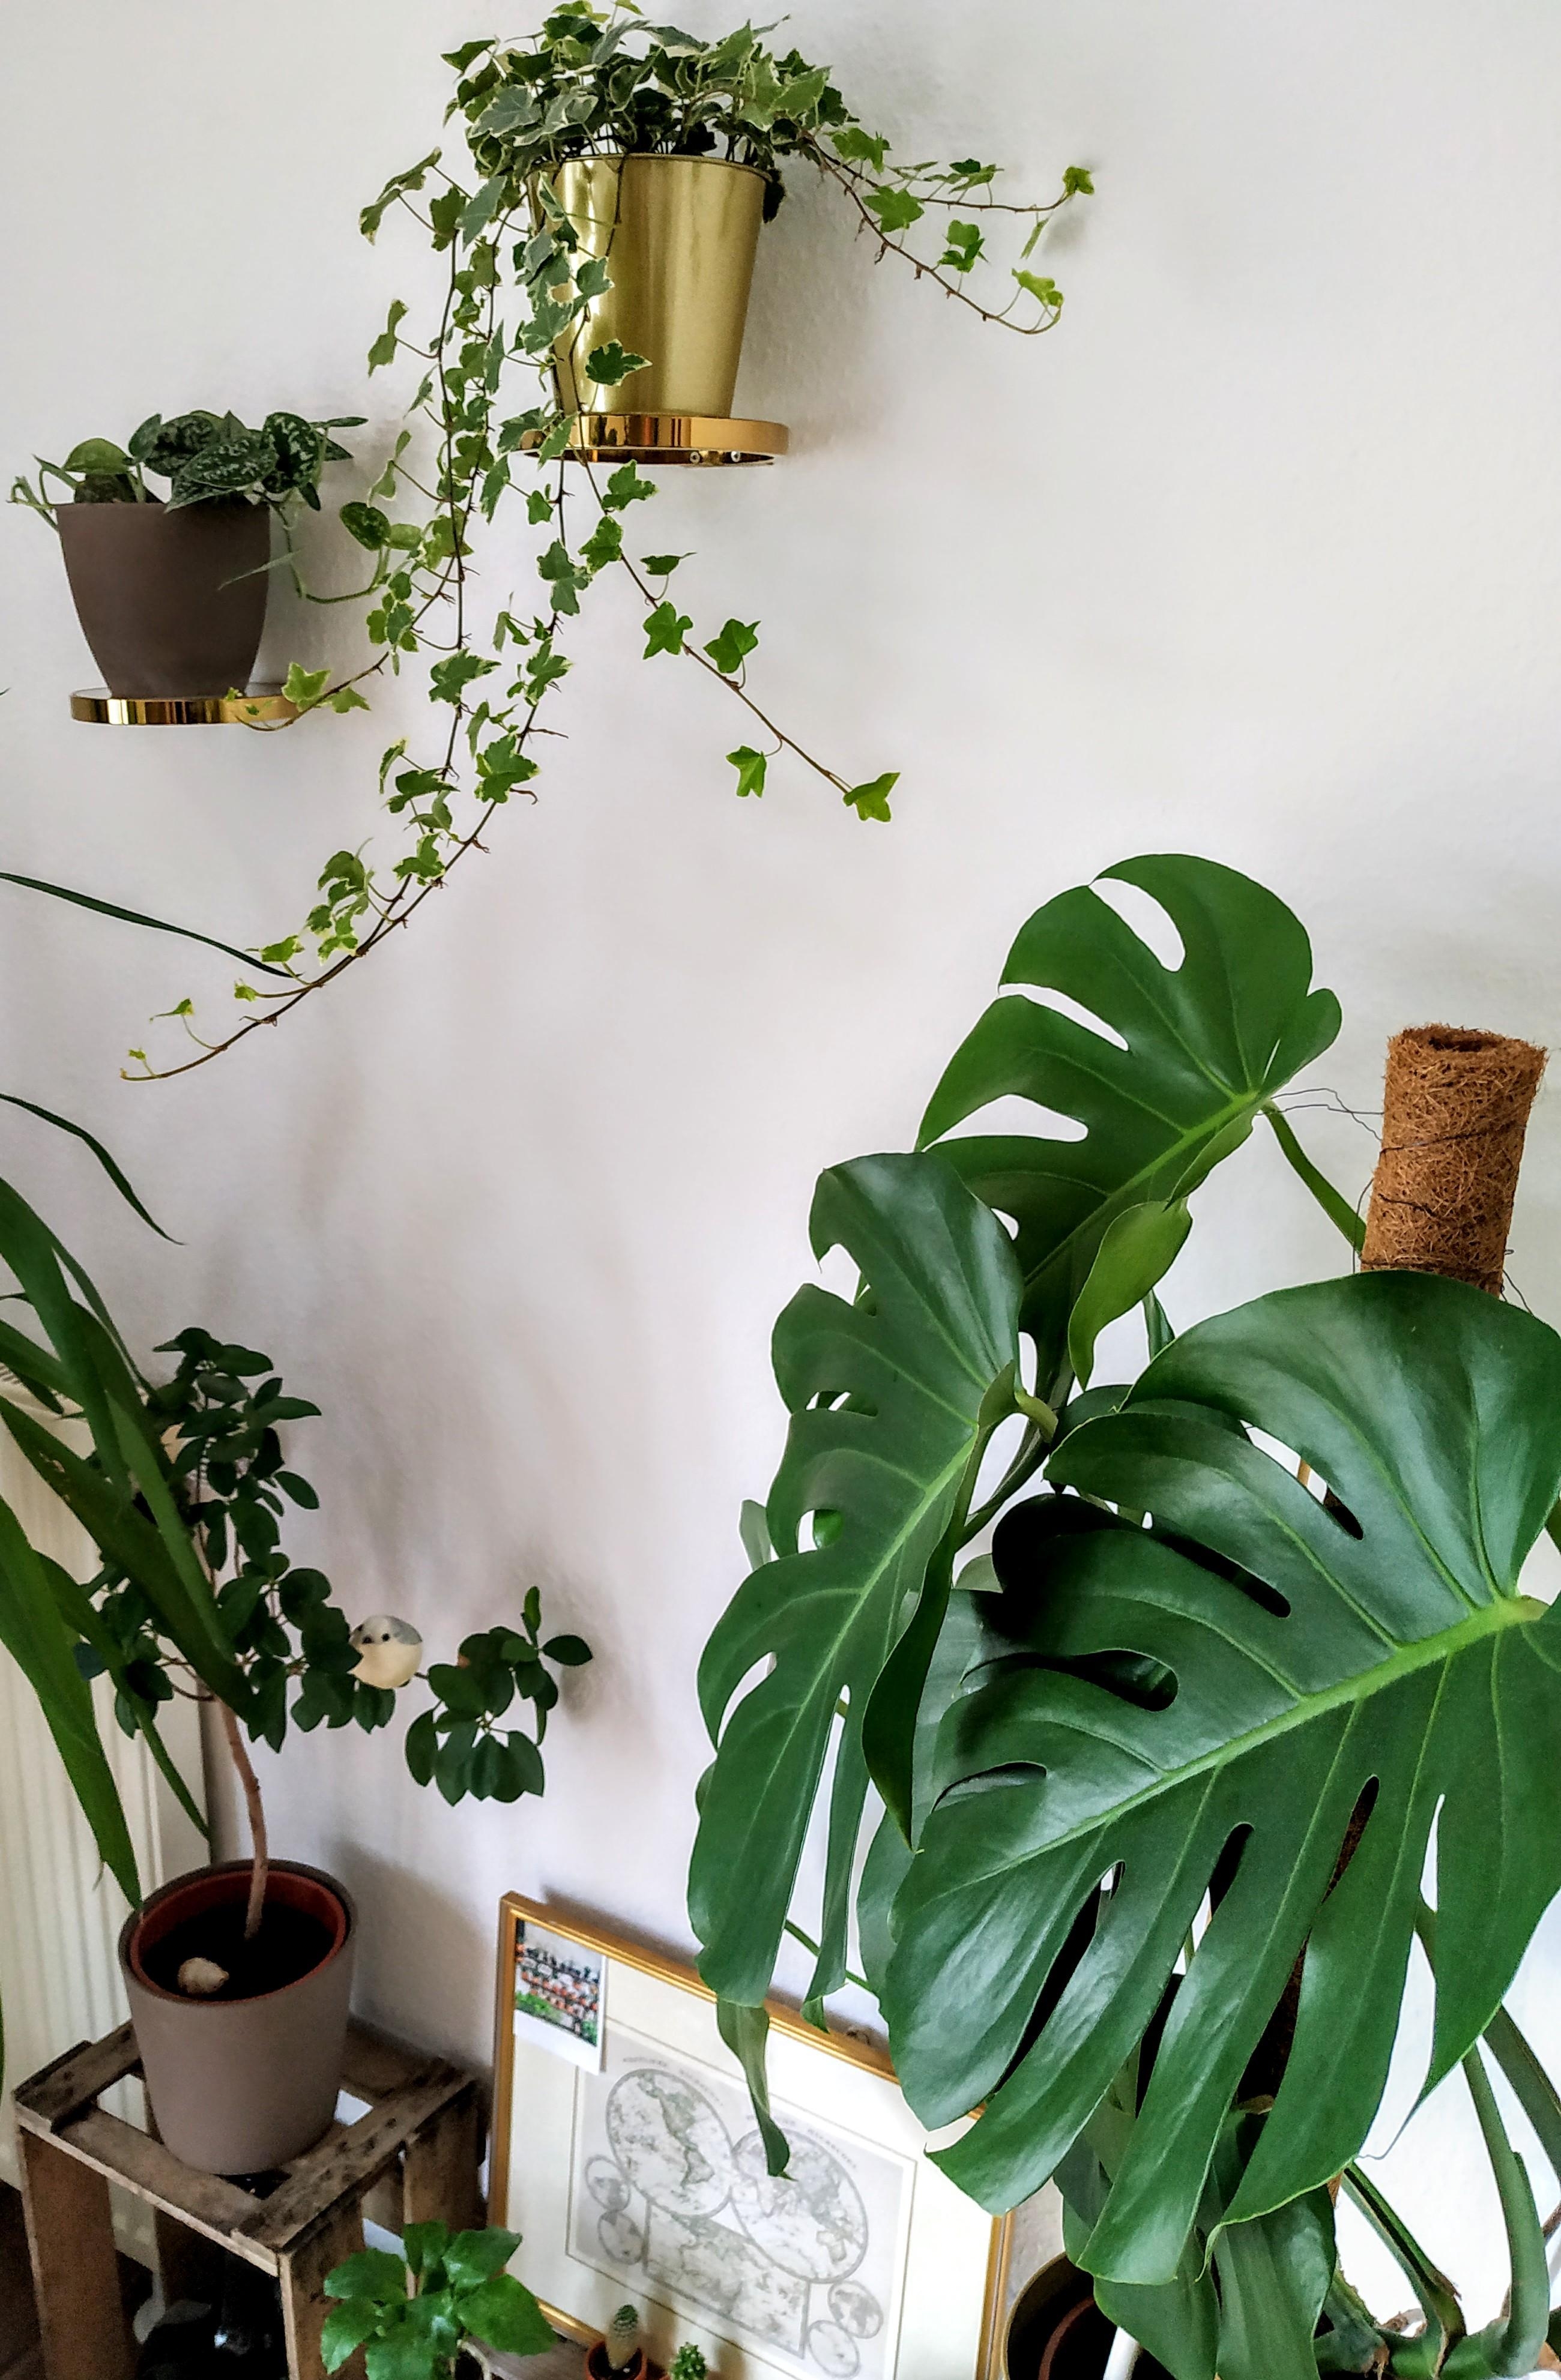 Oh happy plants 🌿
#couchliebt #jungle #grünerleben